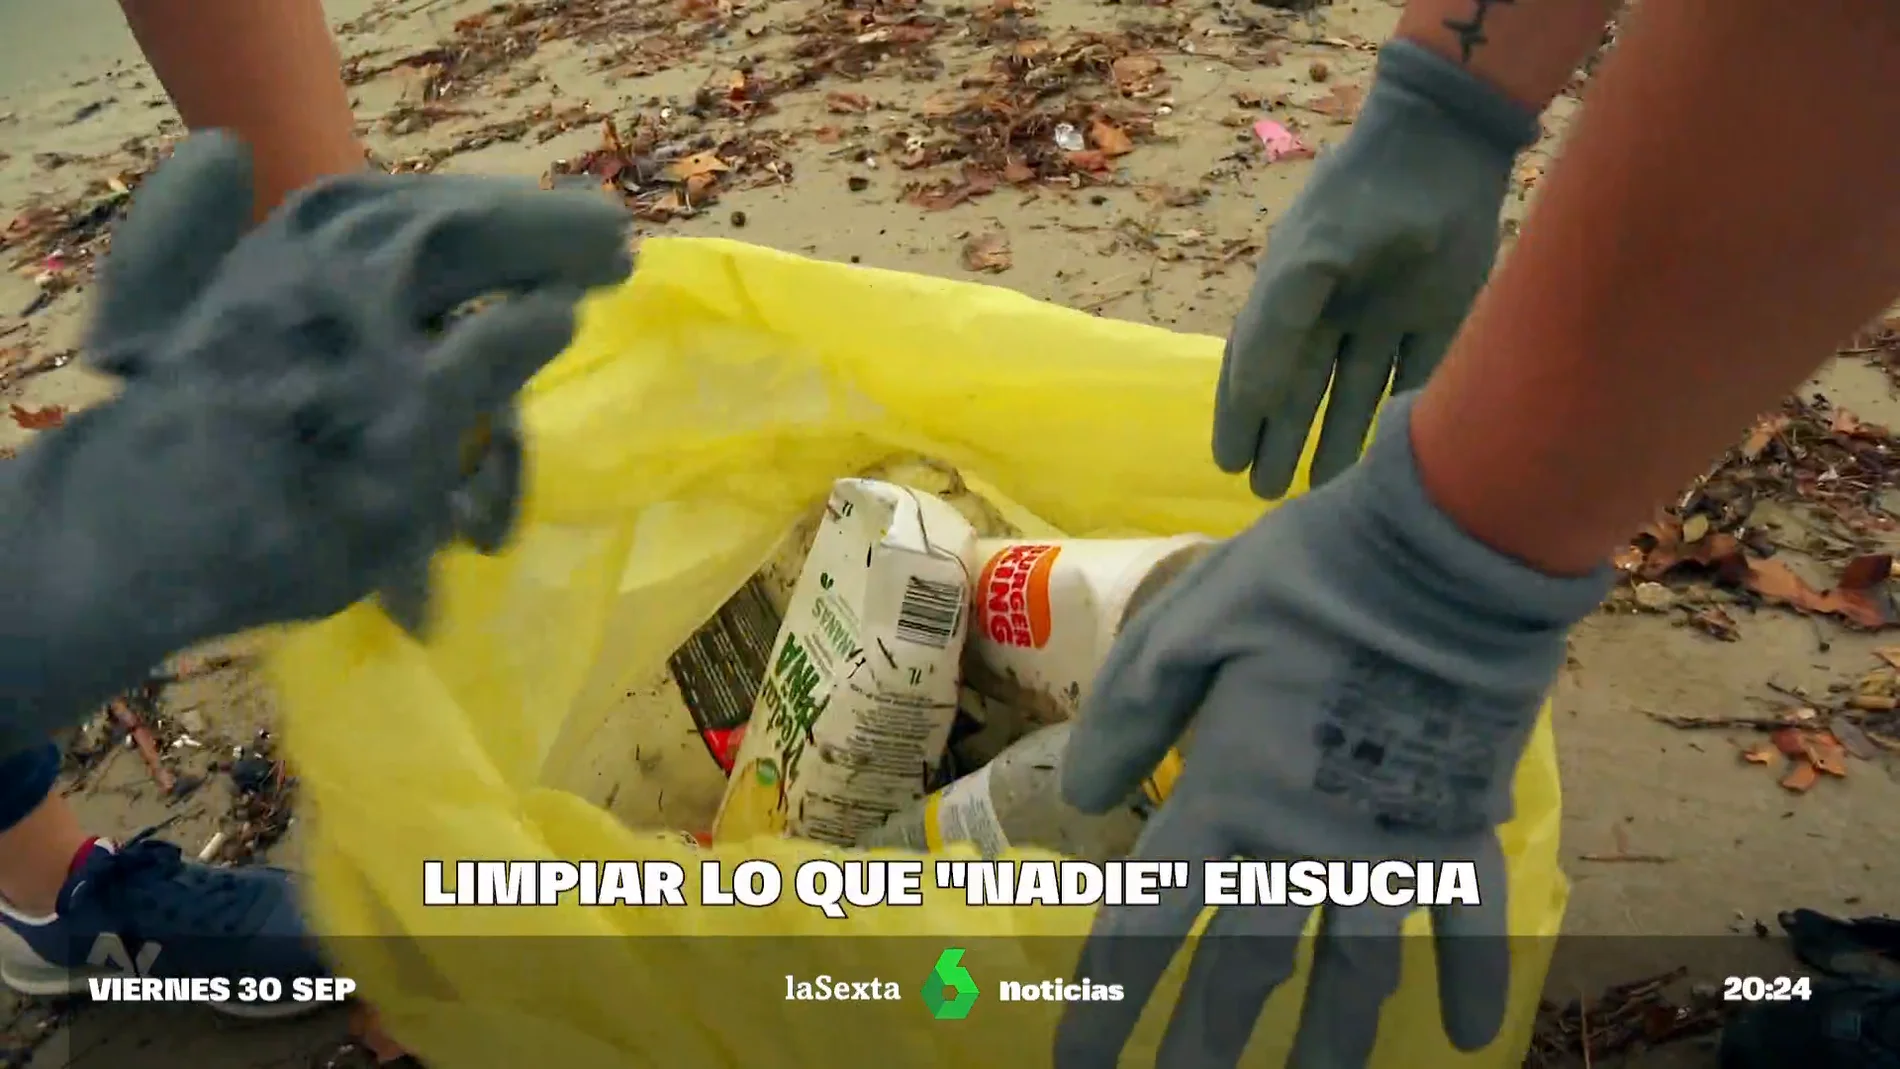 Más de 500 municipios unidos para limpiar la basuraleza que "nadie" deja